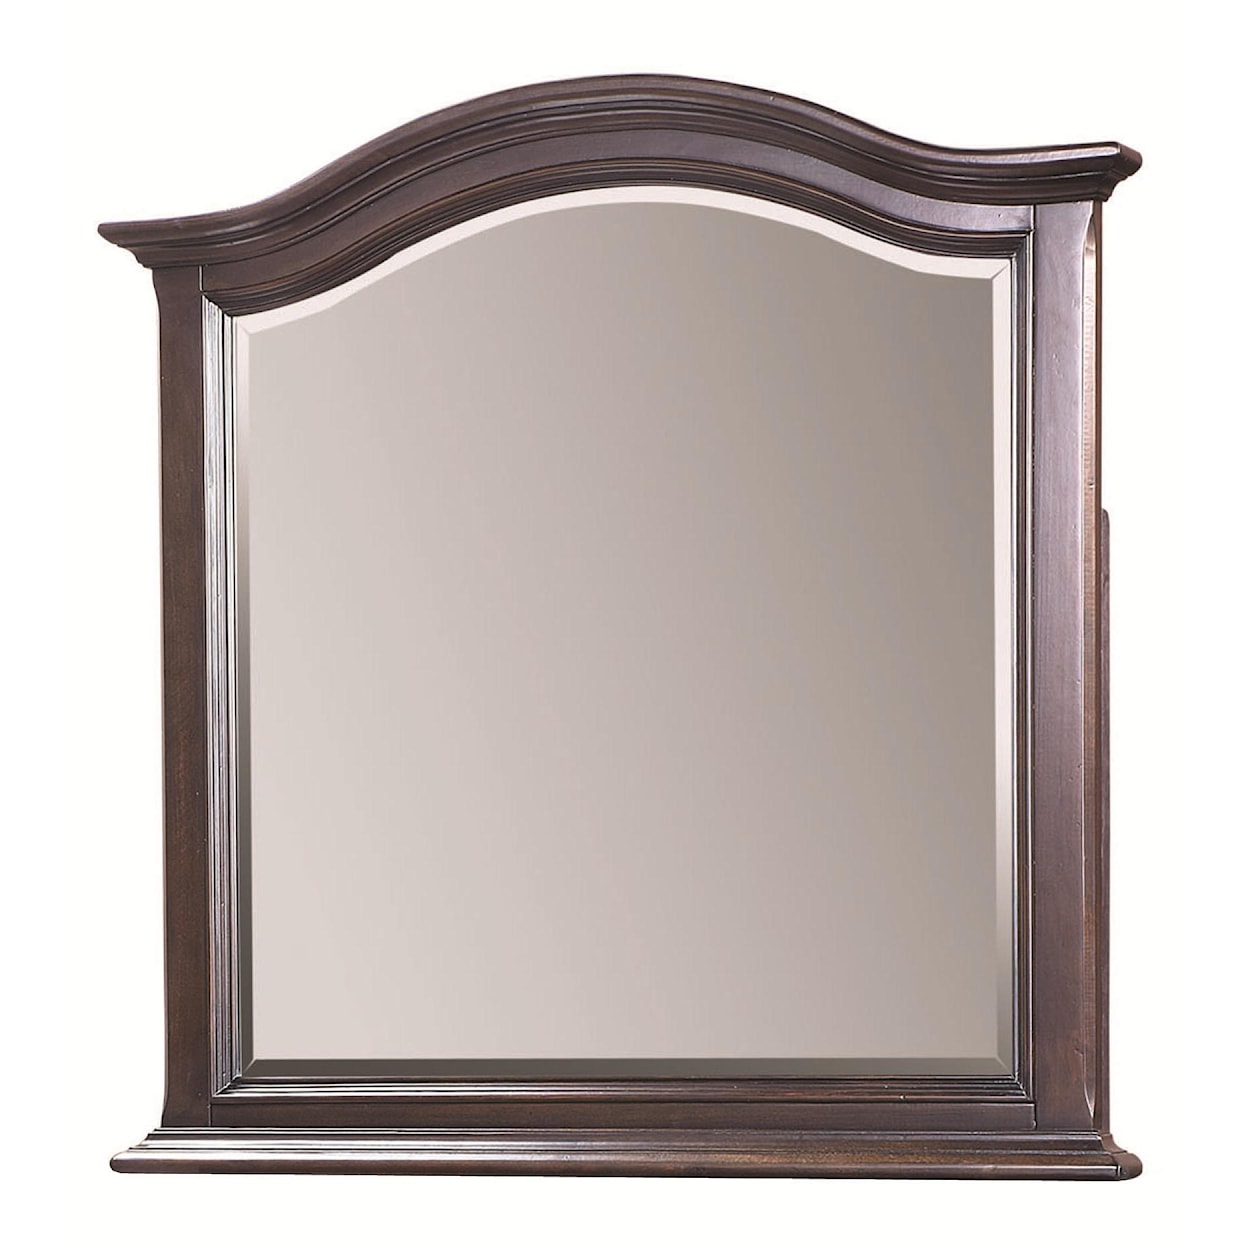 Aspenhome Copper Hill Arched Mirror